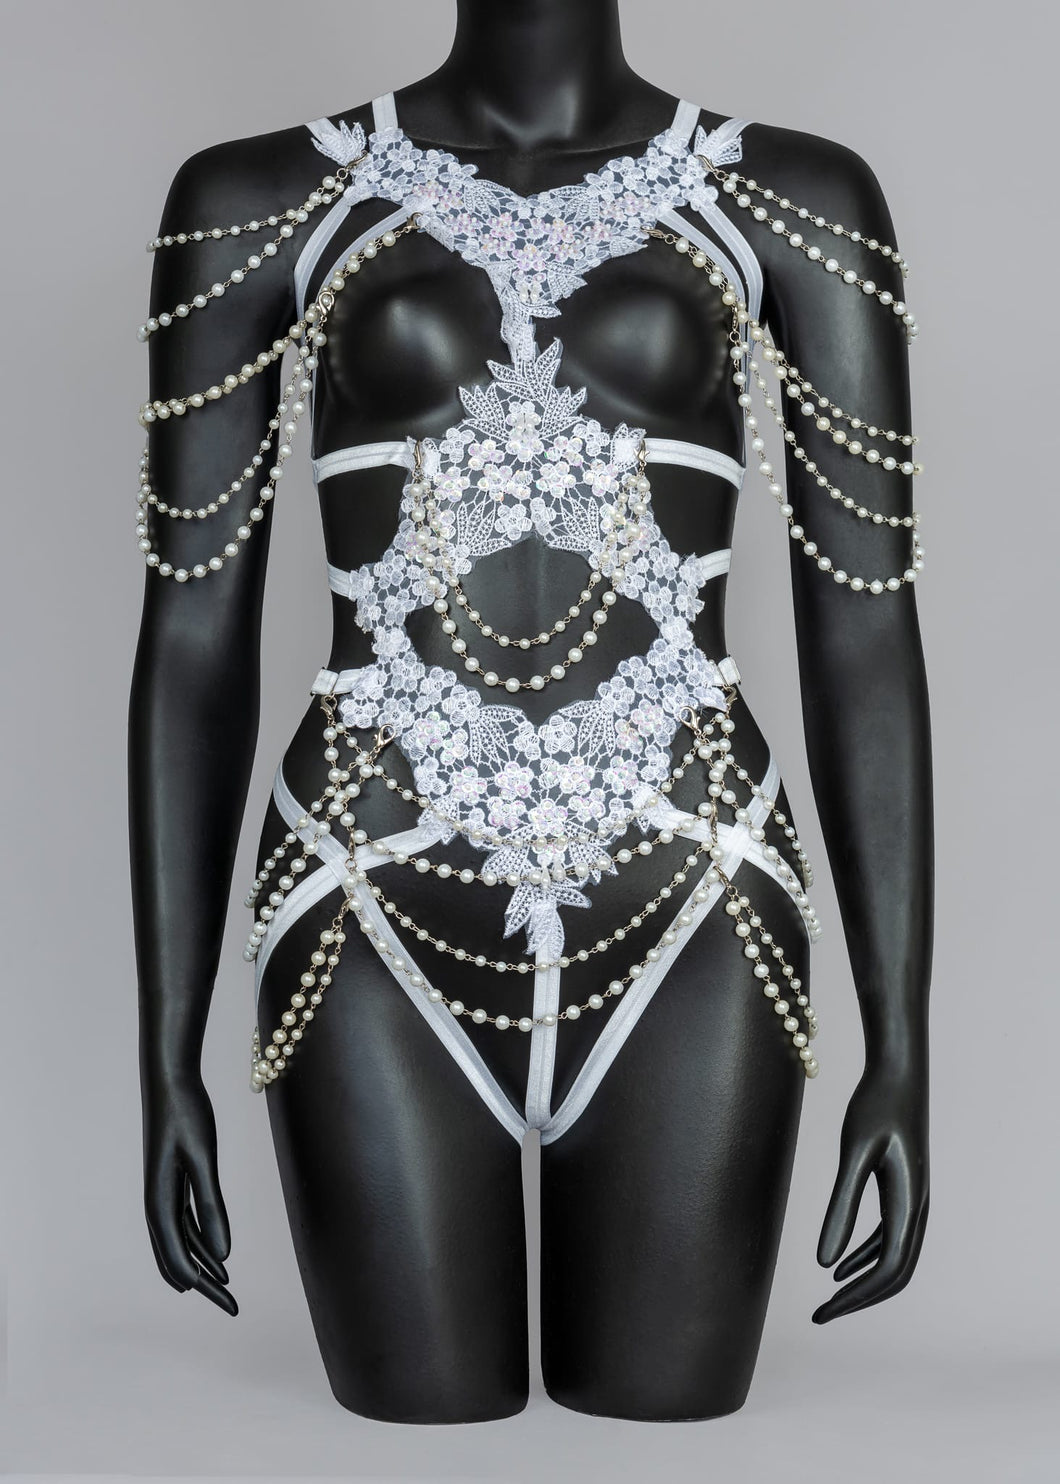 IMMORTALIA - White Lace & Pearl String Bodycage